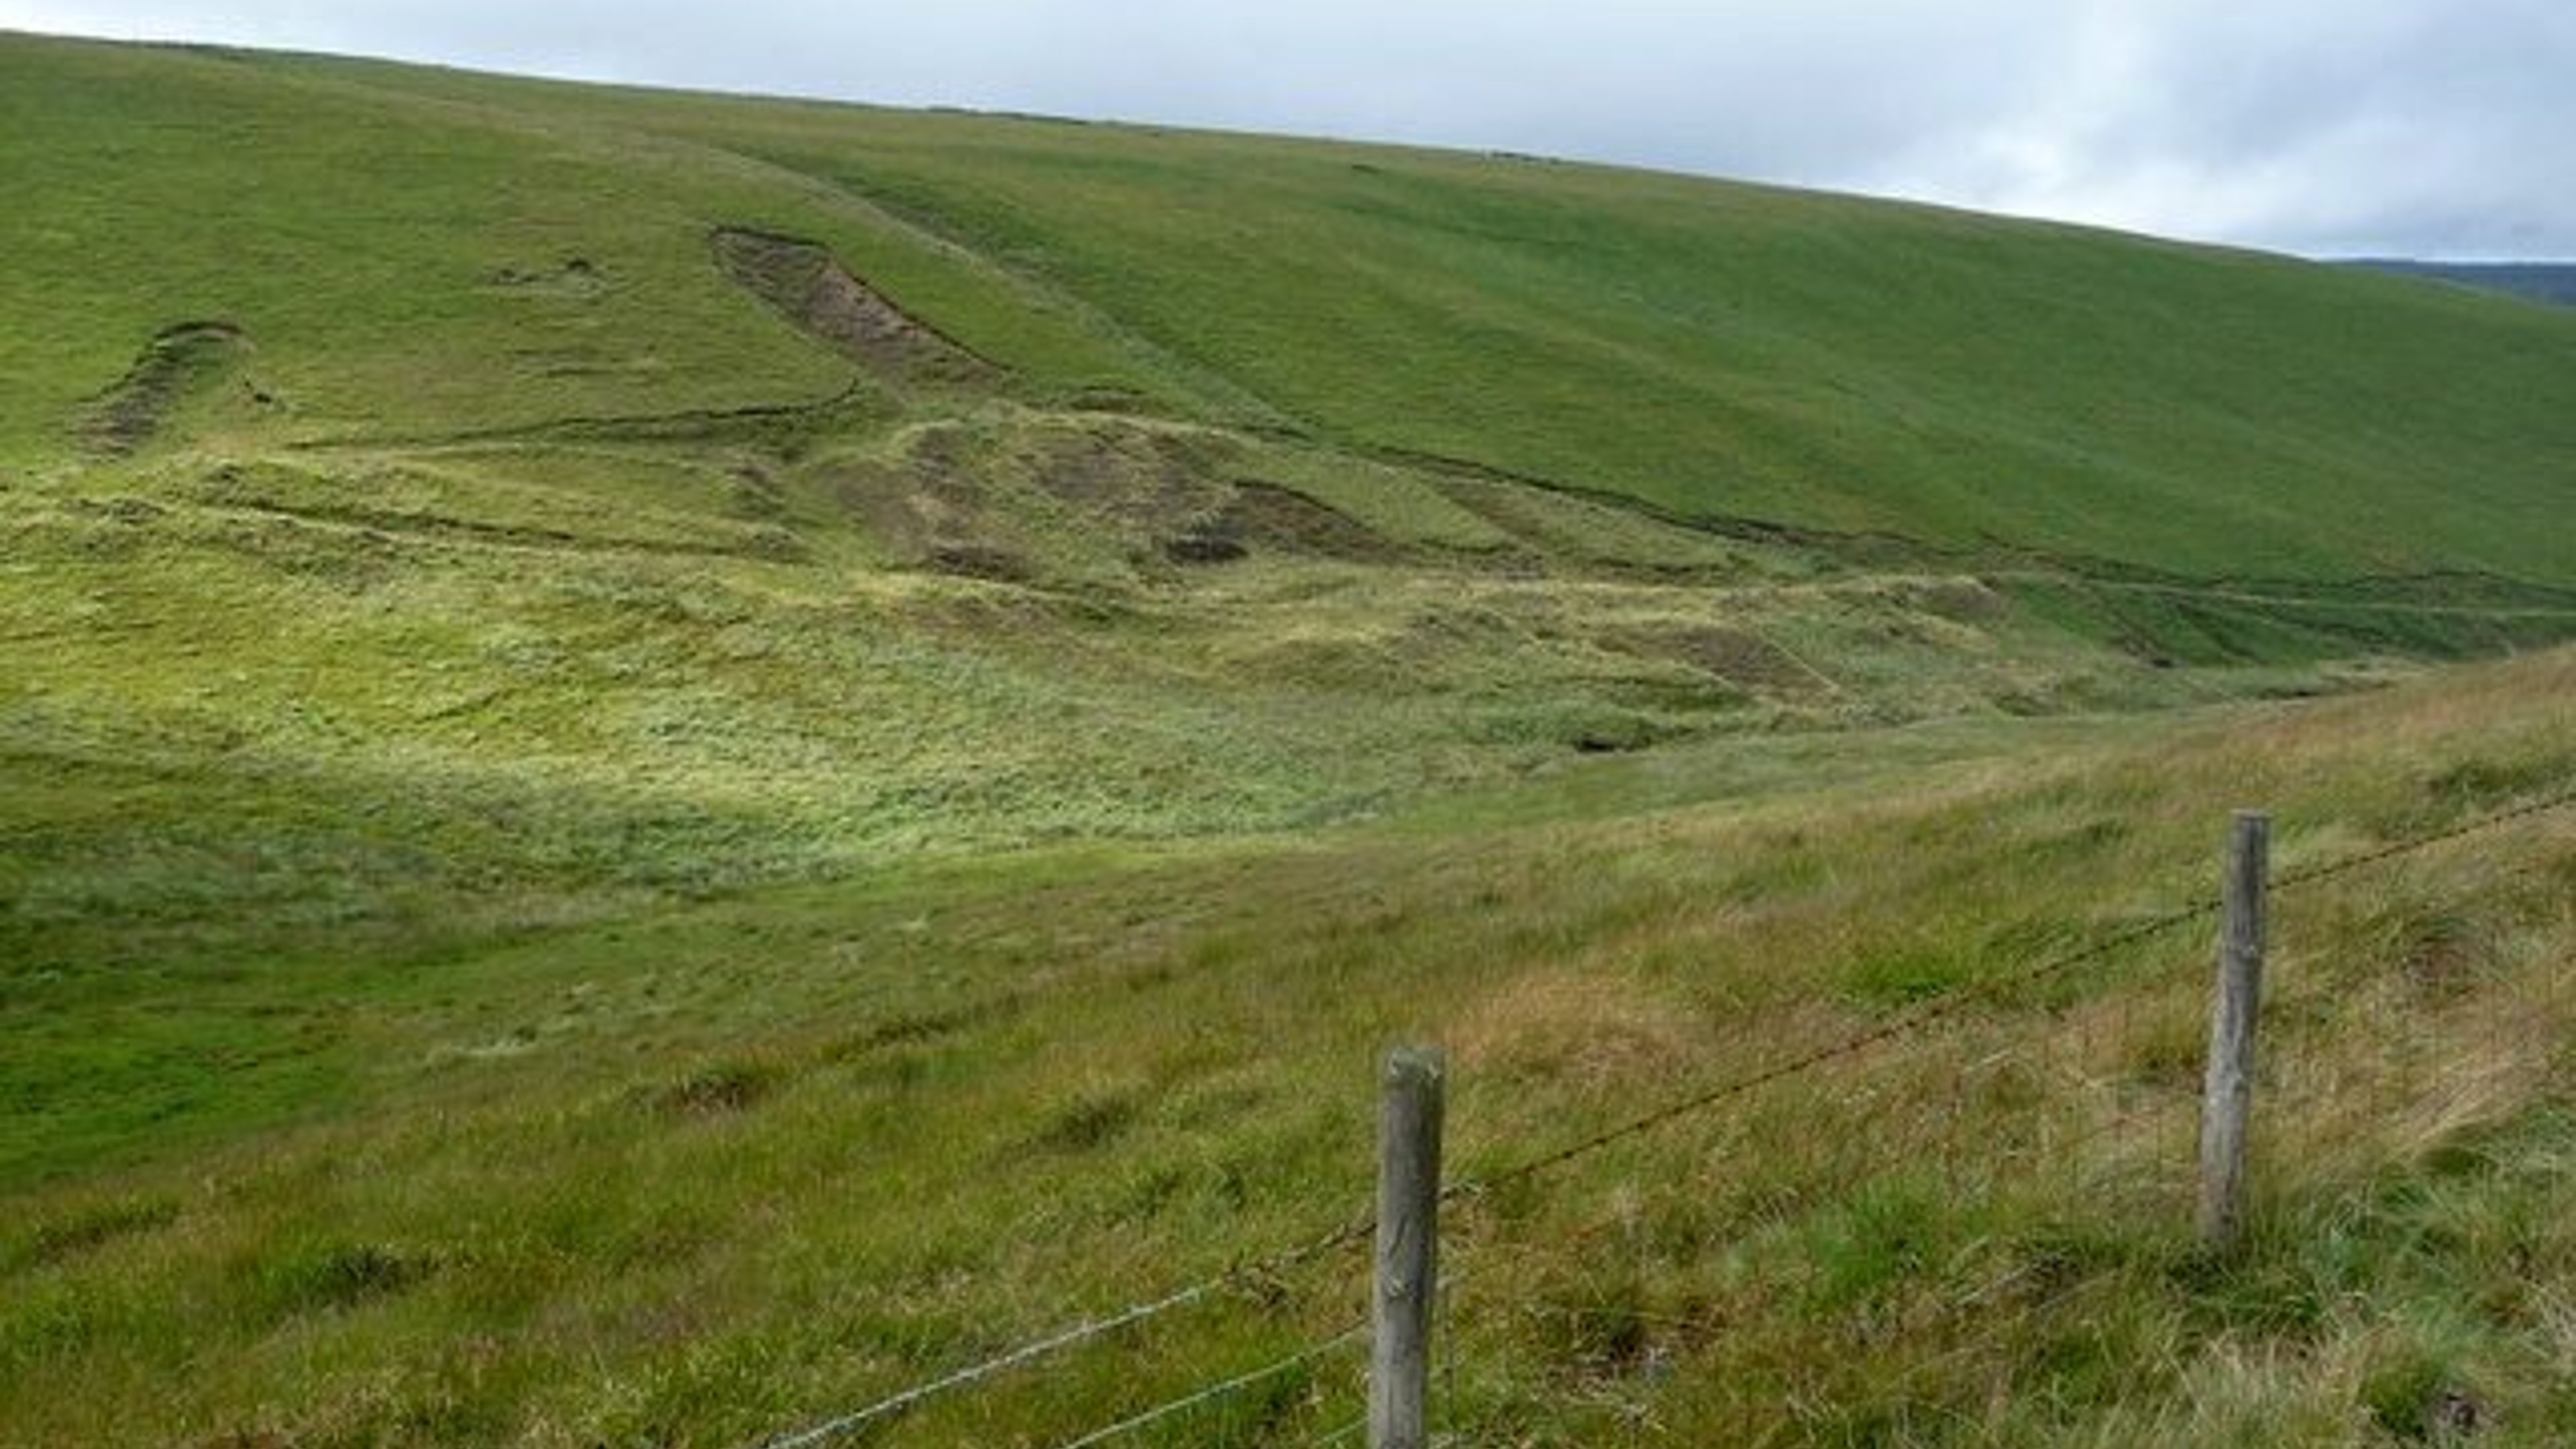 Foel y Dyffryn (Bridgend 3 Peaks Hiking Challenge)